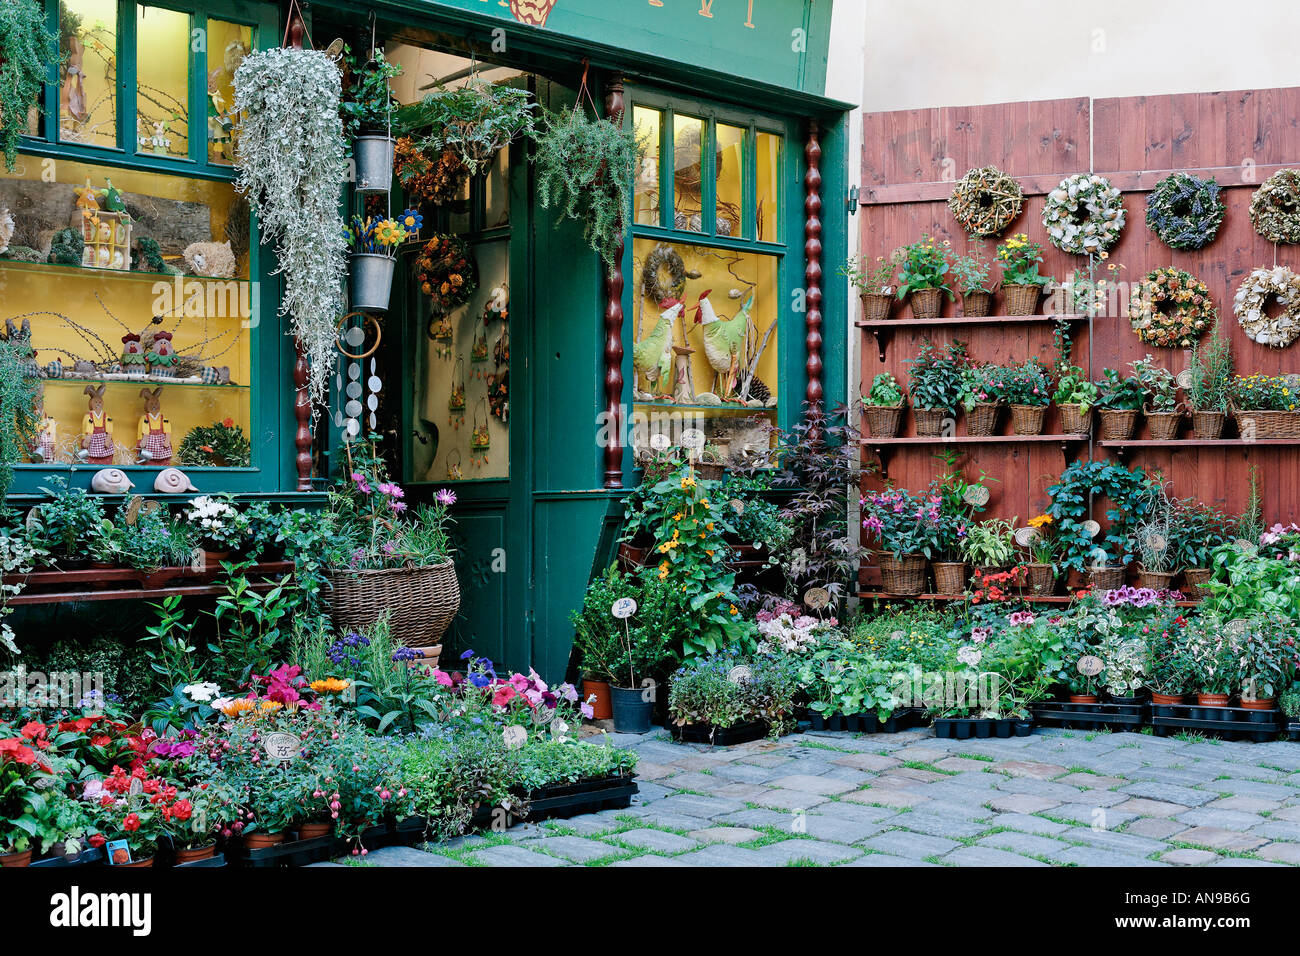 Czech flower shop